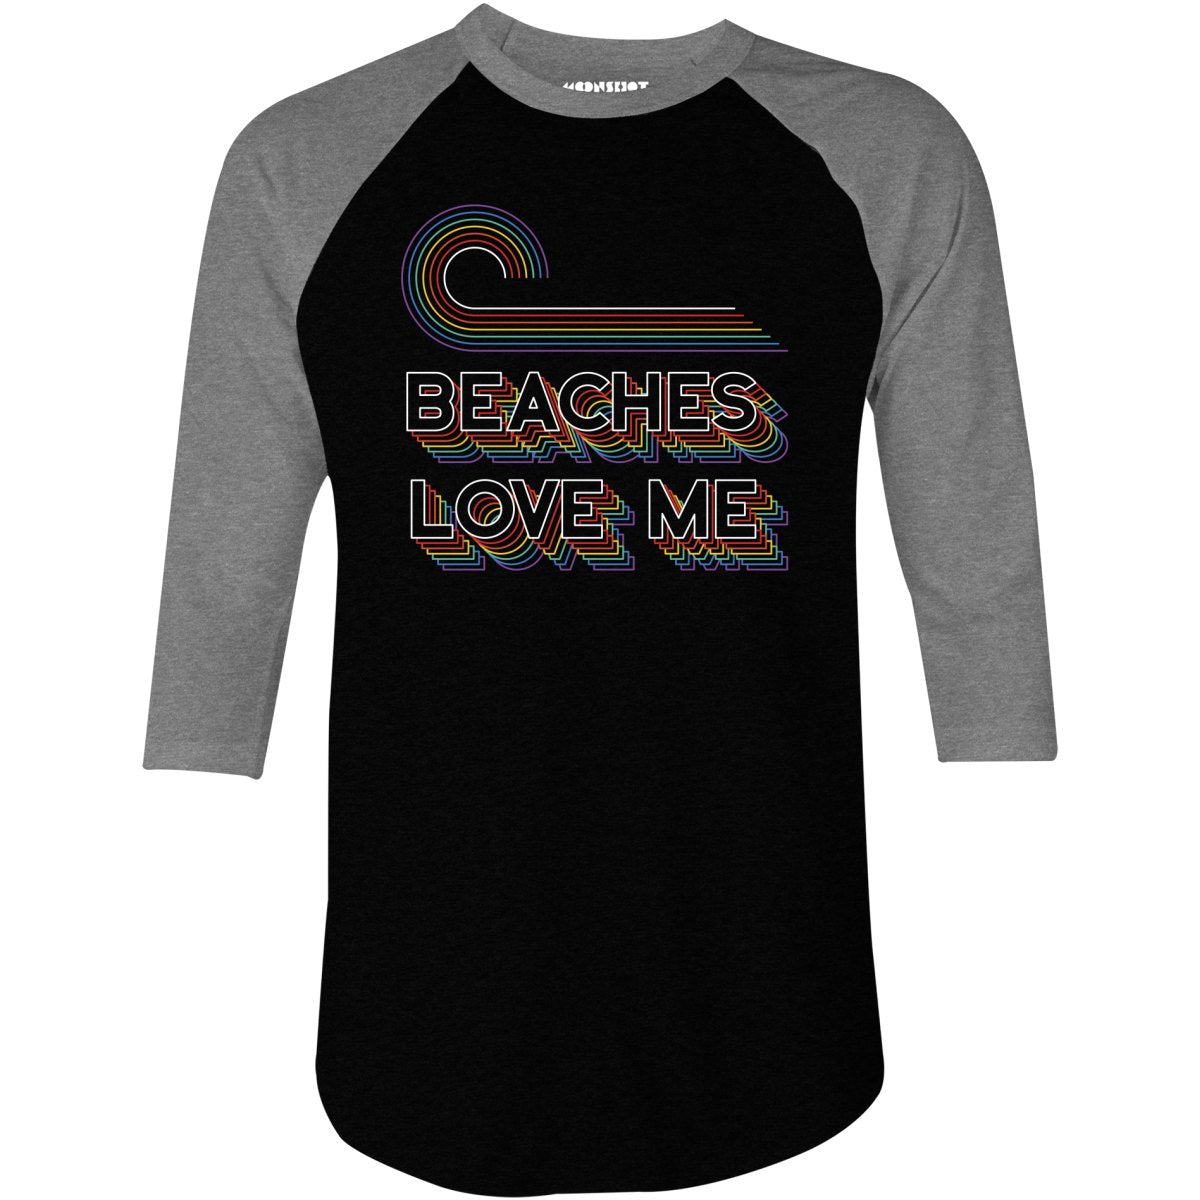 Beaches Love Me - 3/4 Sleeve Raglan T-Shirt